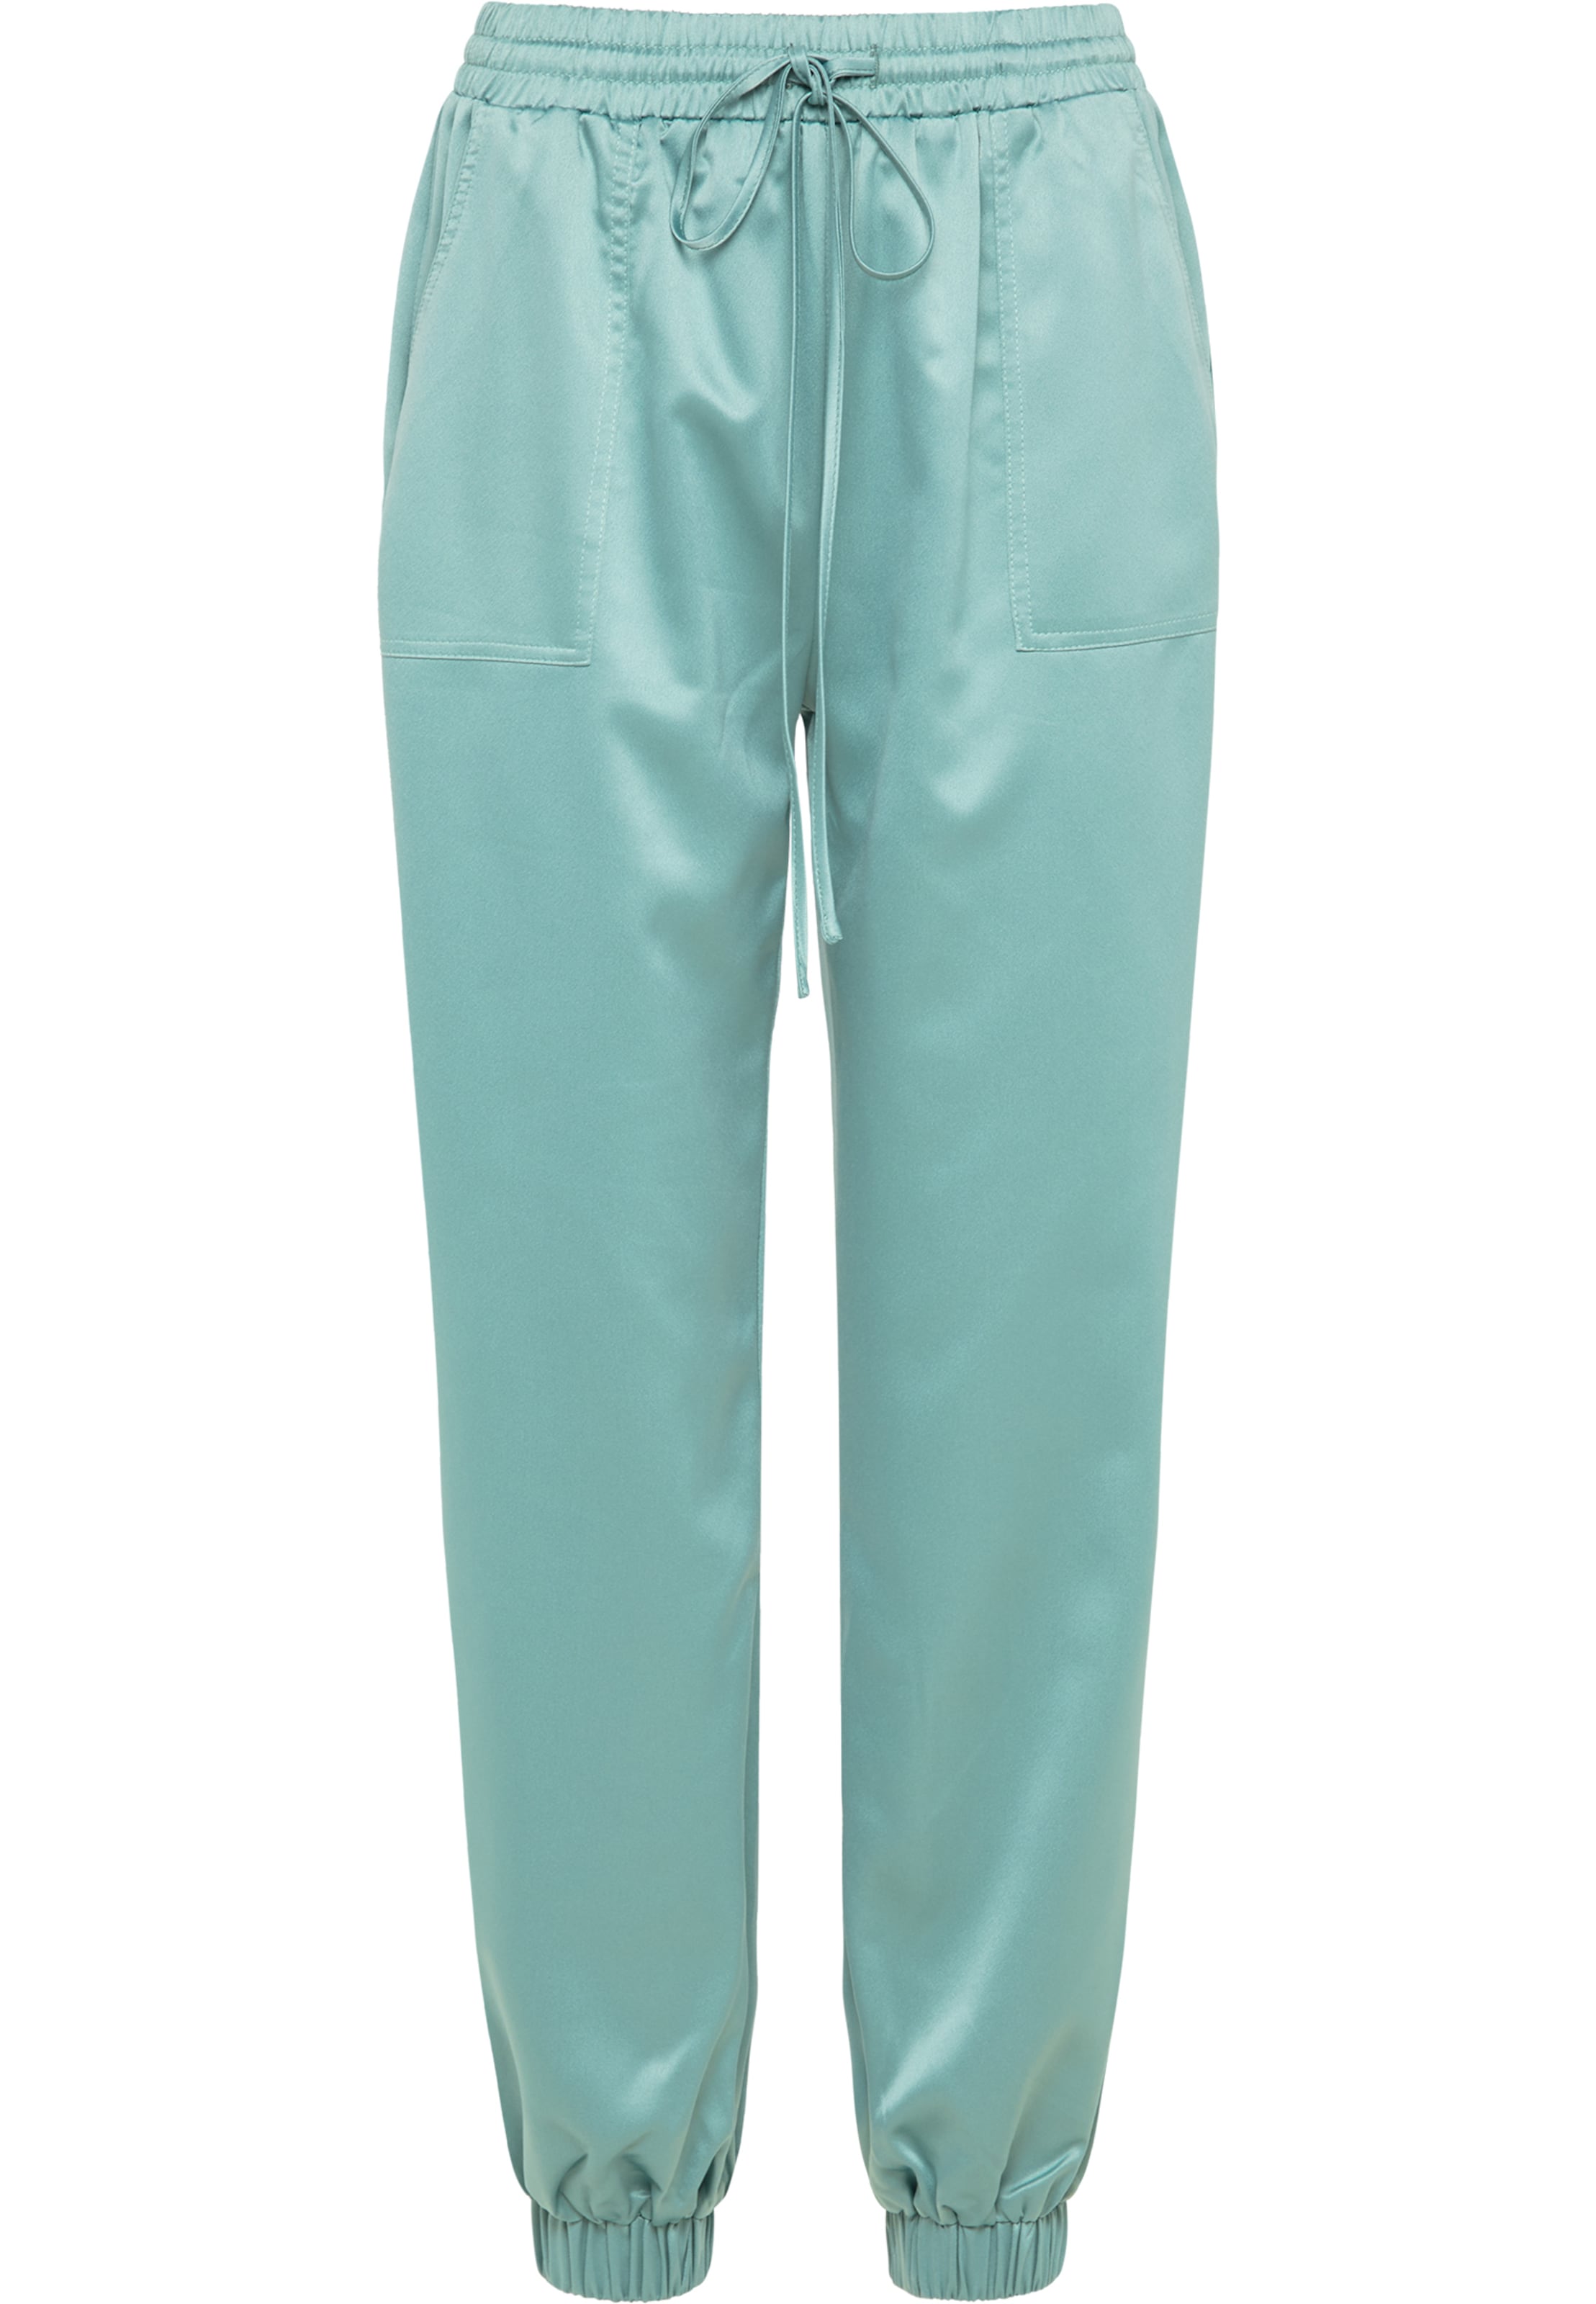 Abbigliamento Taglie comode RISA Pantaloni in Verde Pastello 